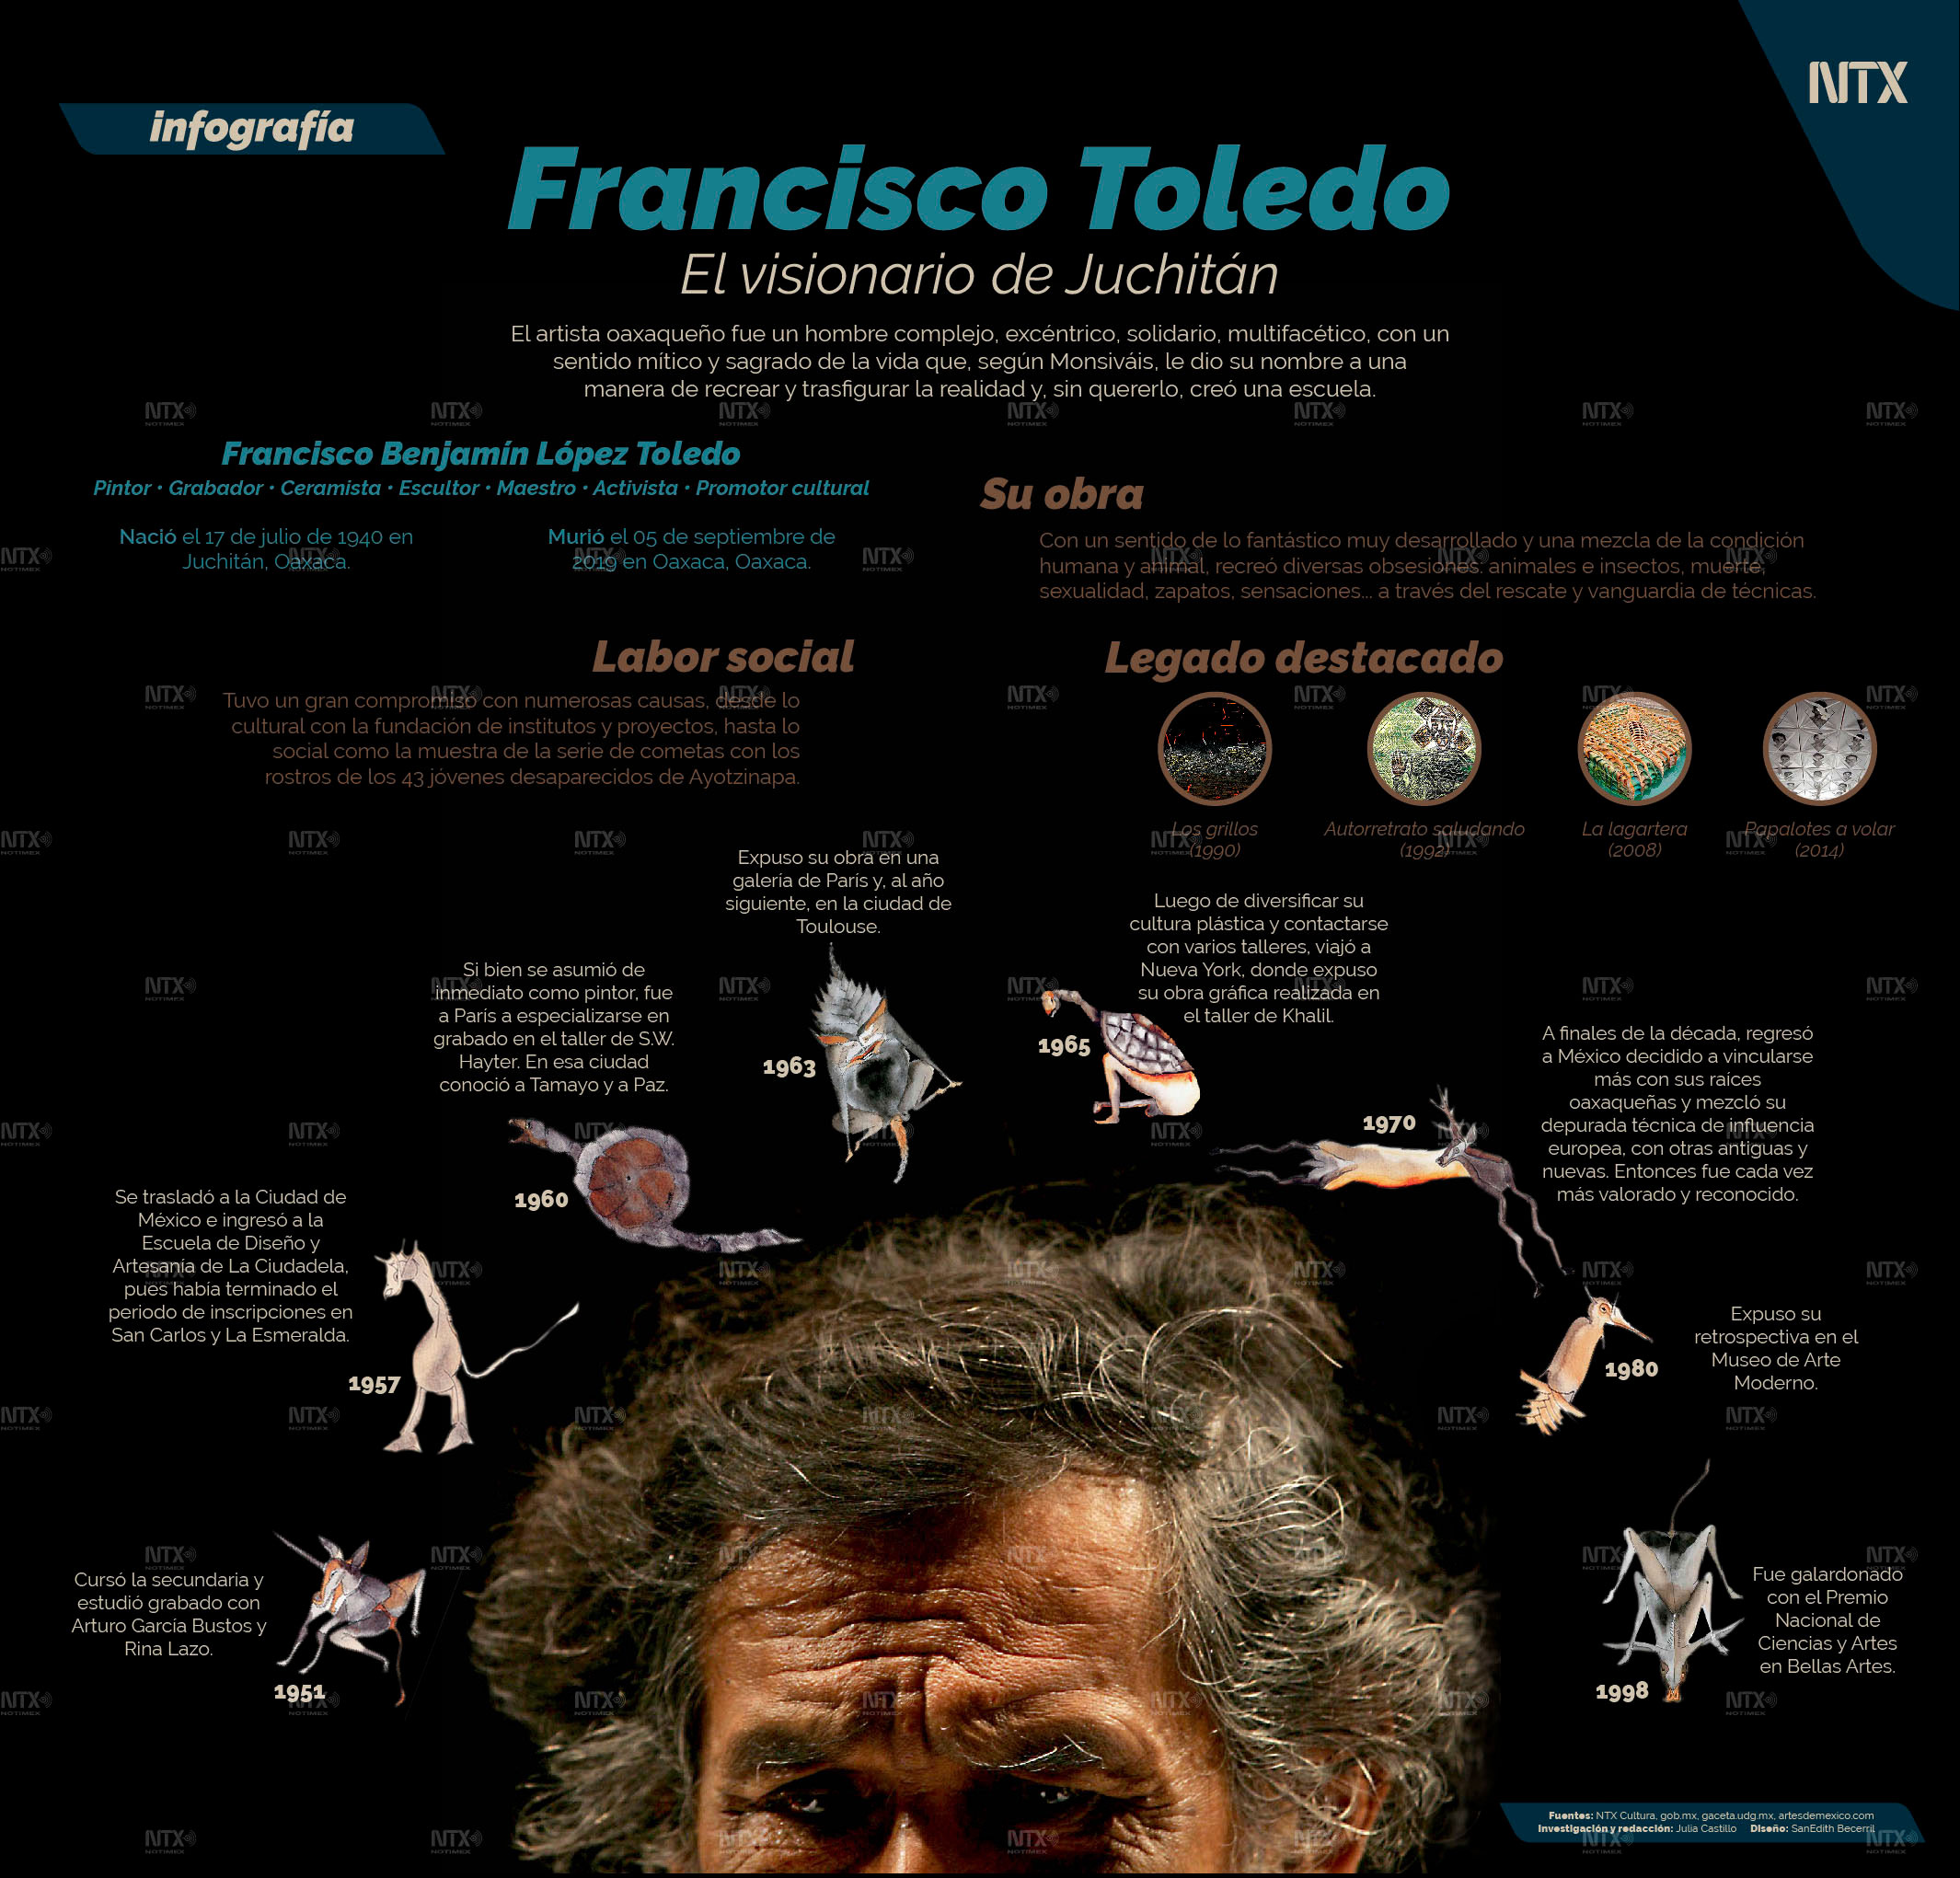 Francisco Toledo, el visionario de Juchitn